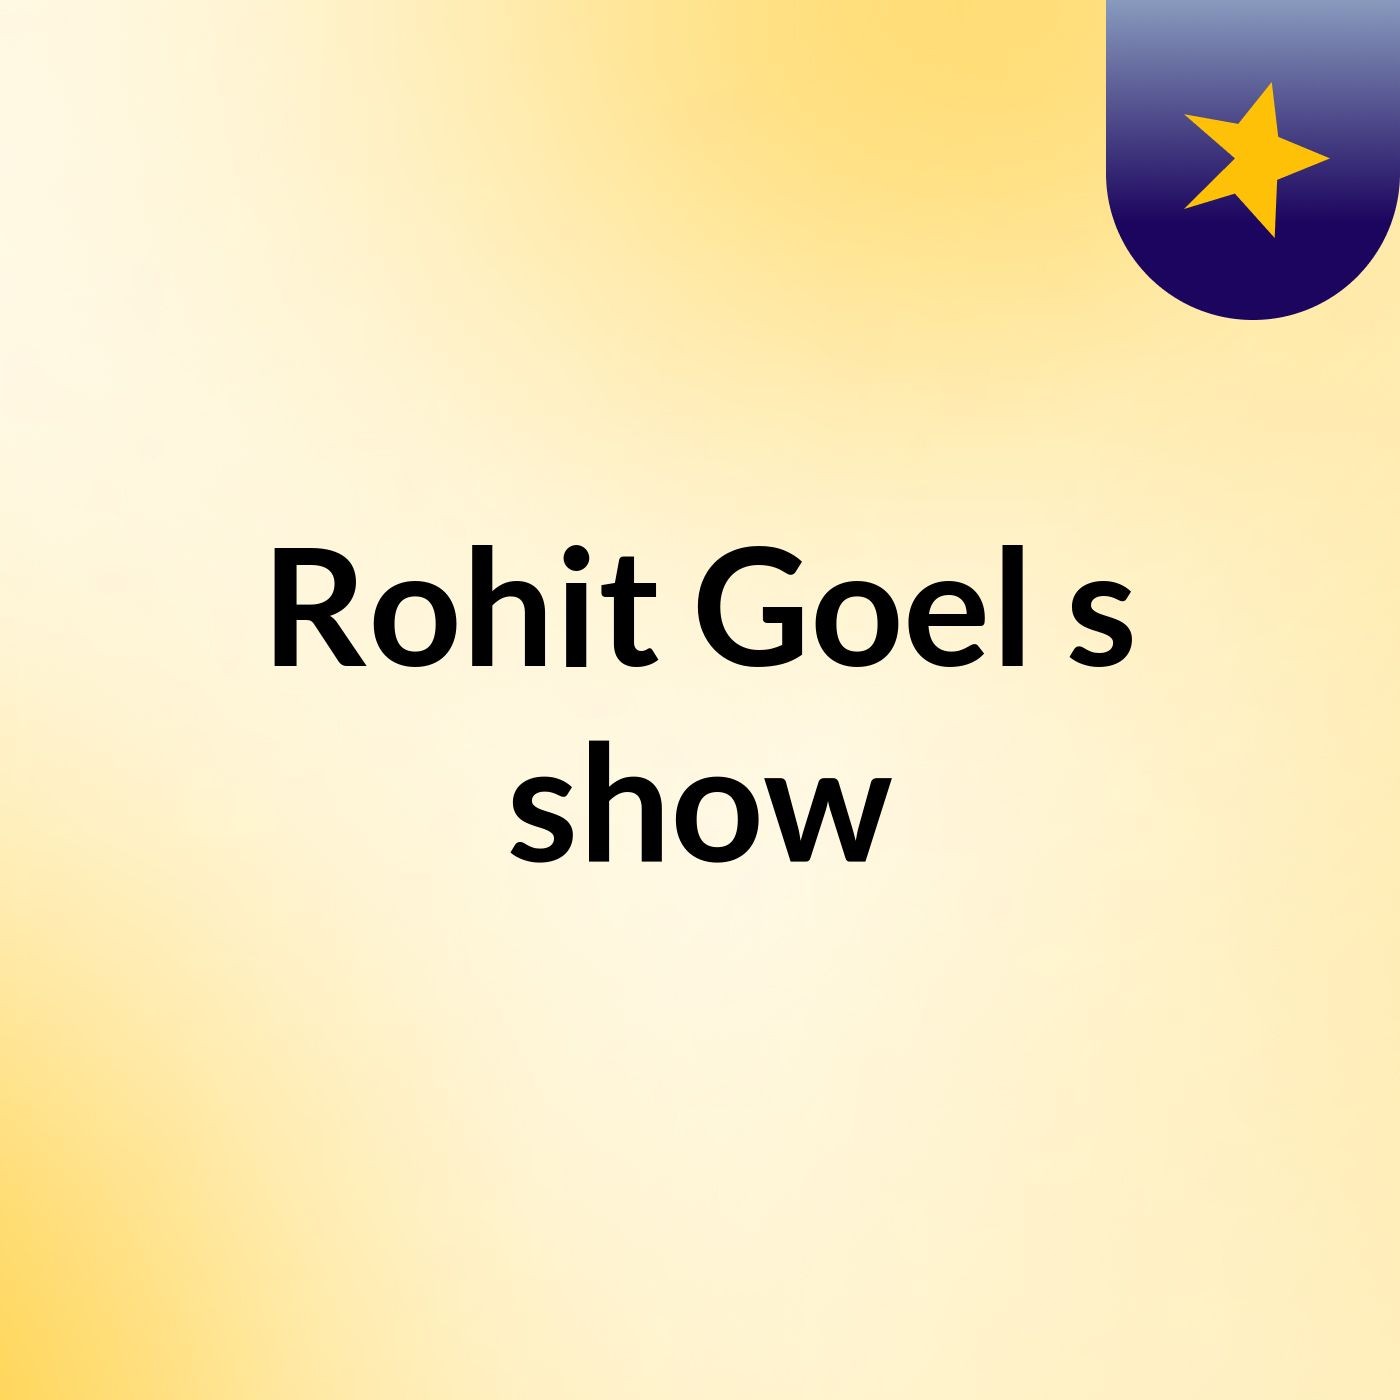 Rohit Goel's show